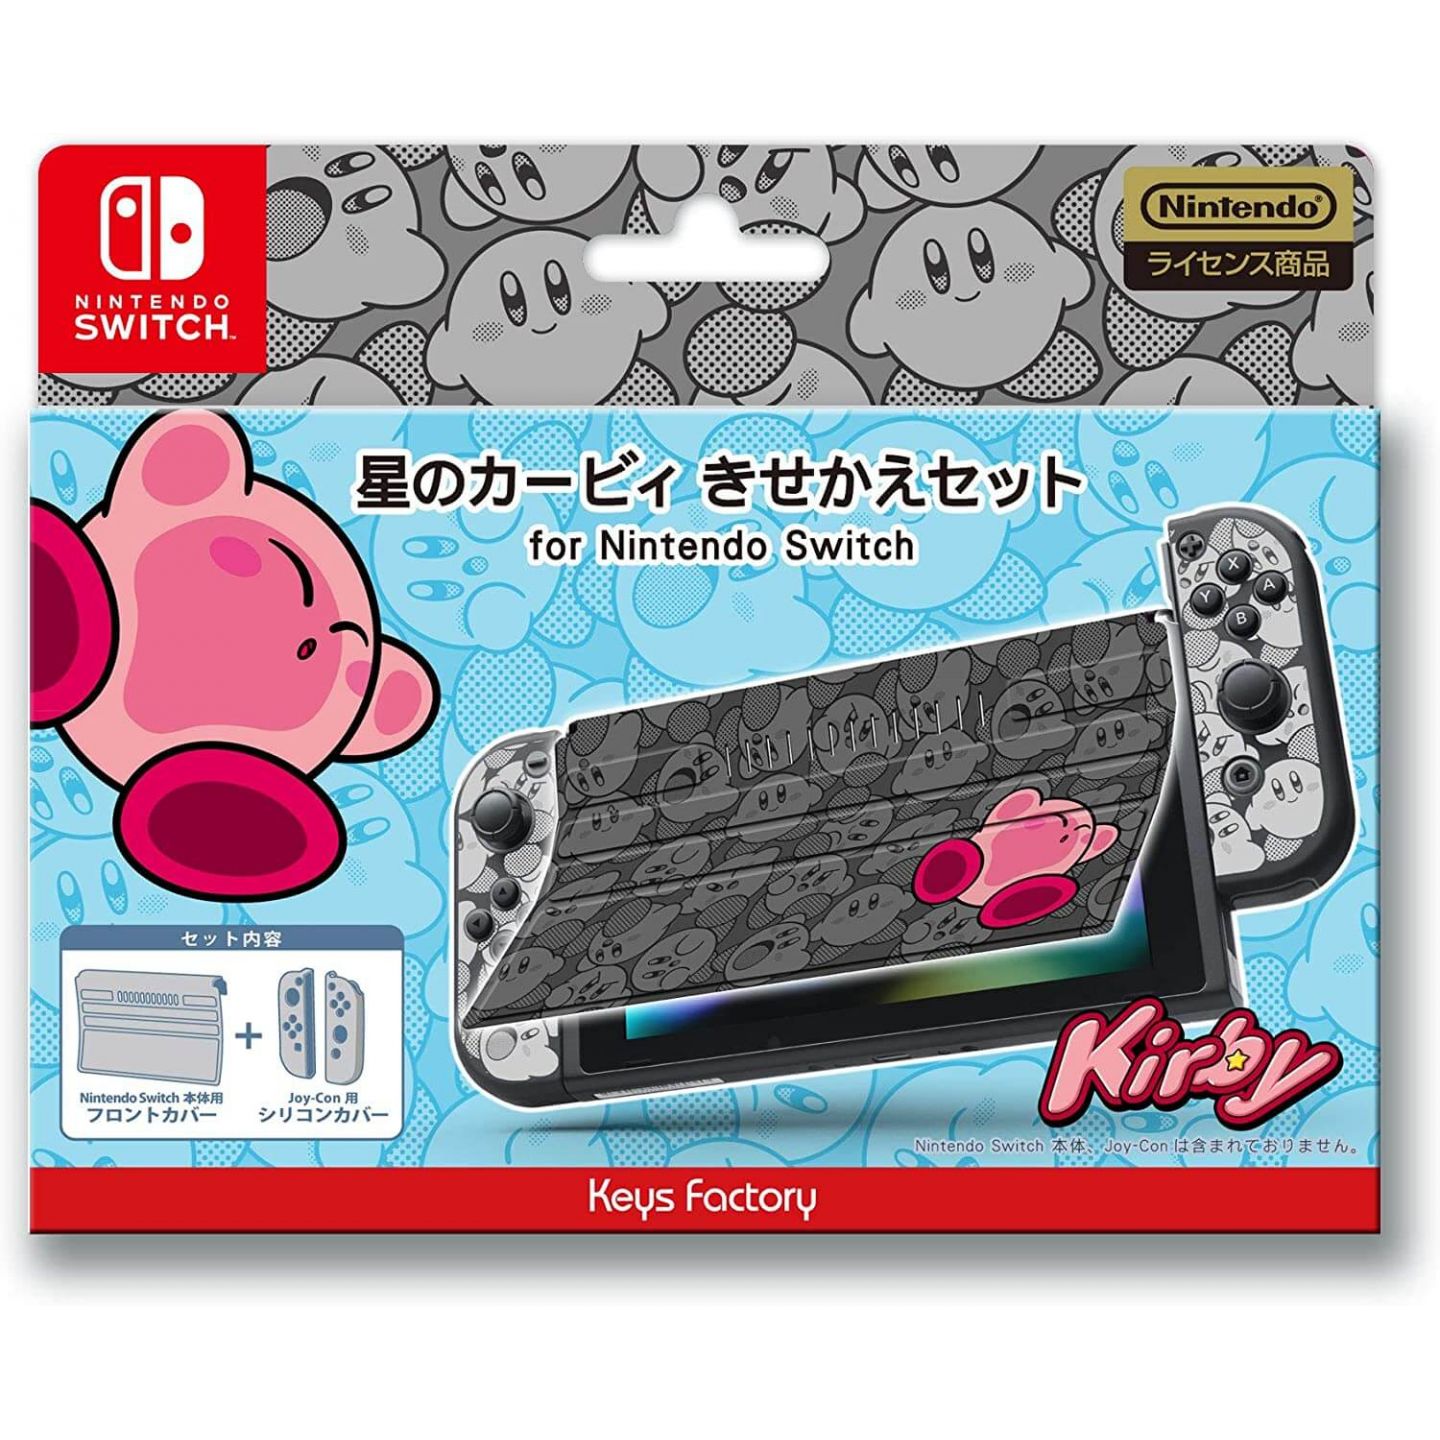 Ключи Нинтендо свитч. Kirby Nintendo Switch купить. Ключи nintendo